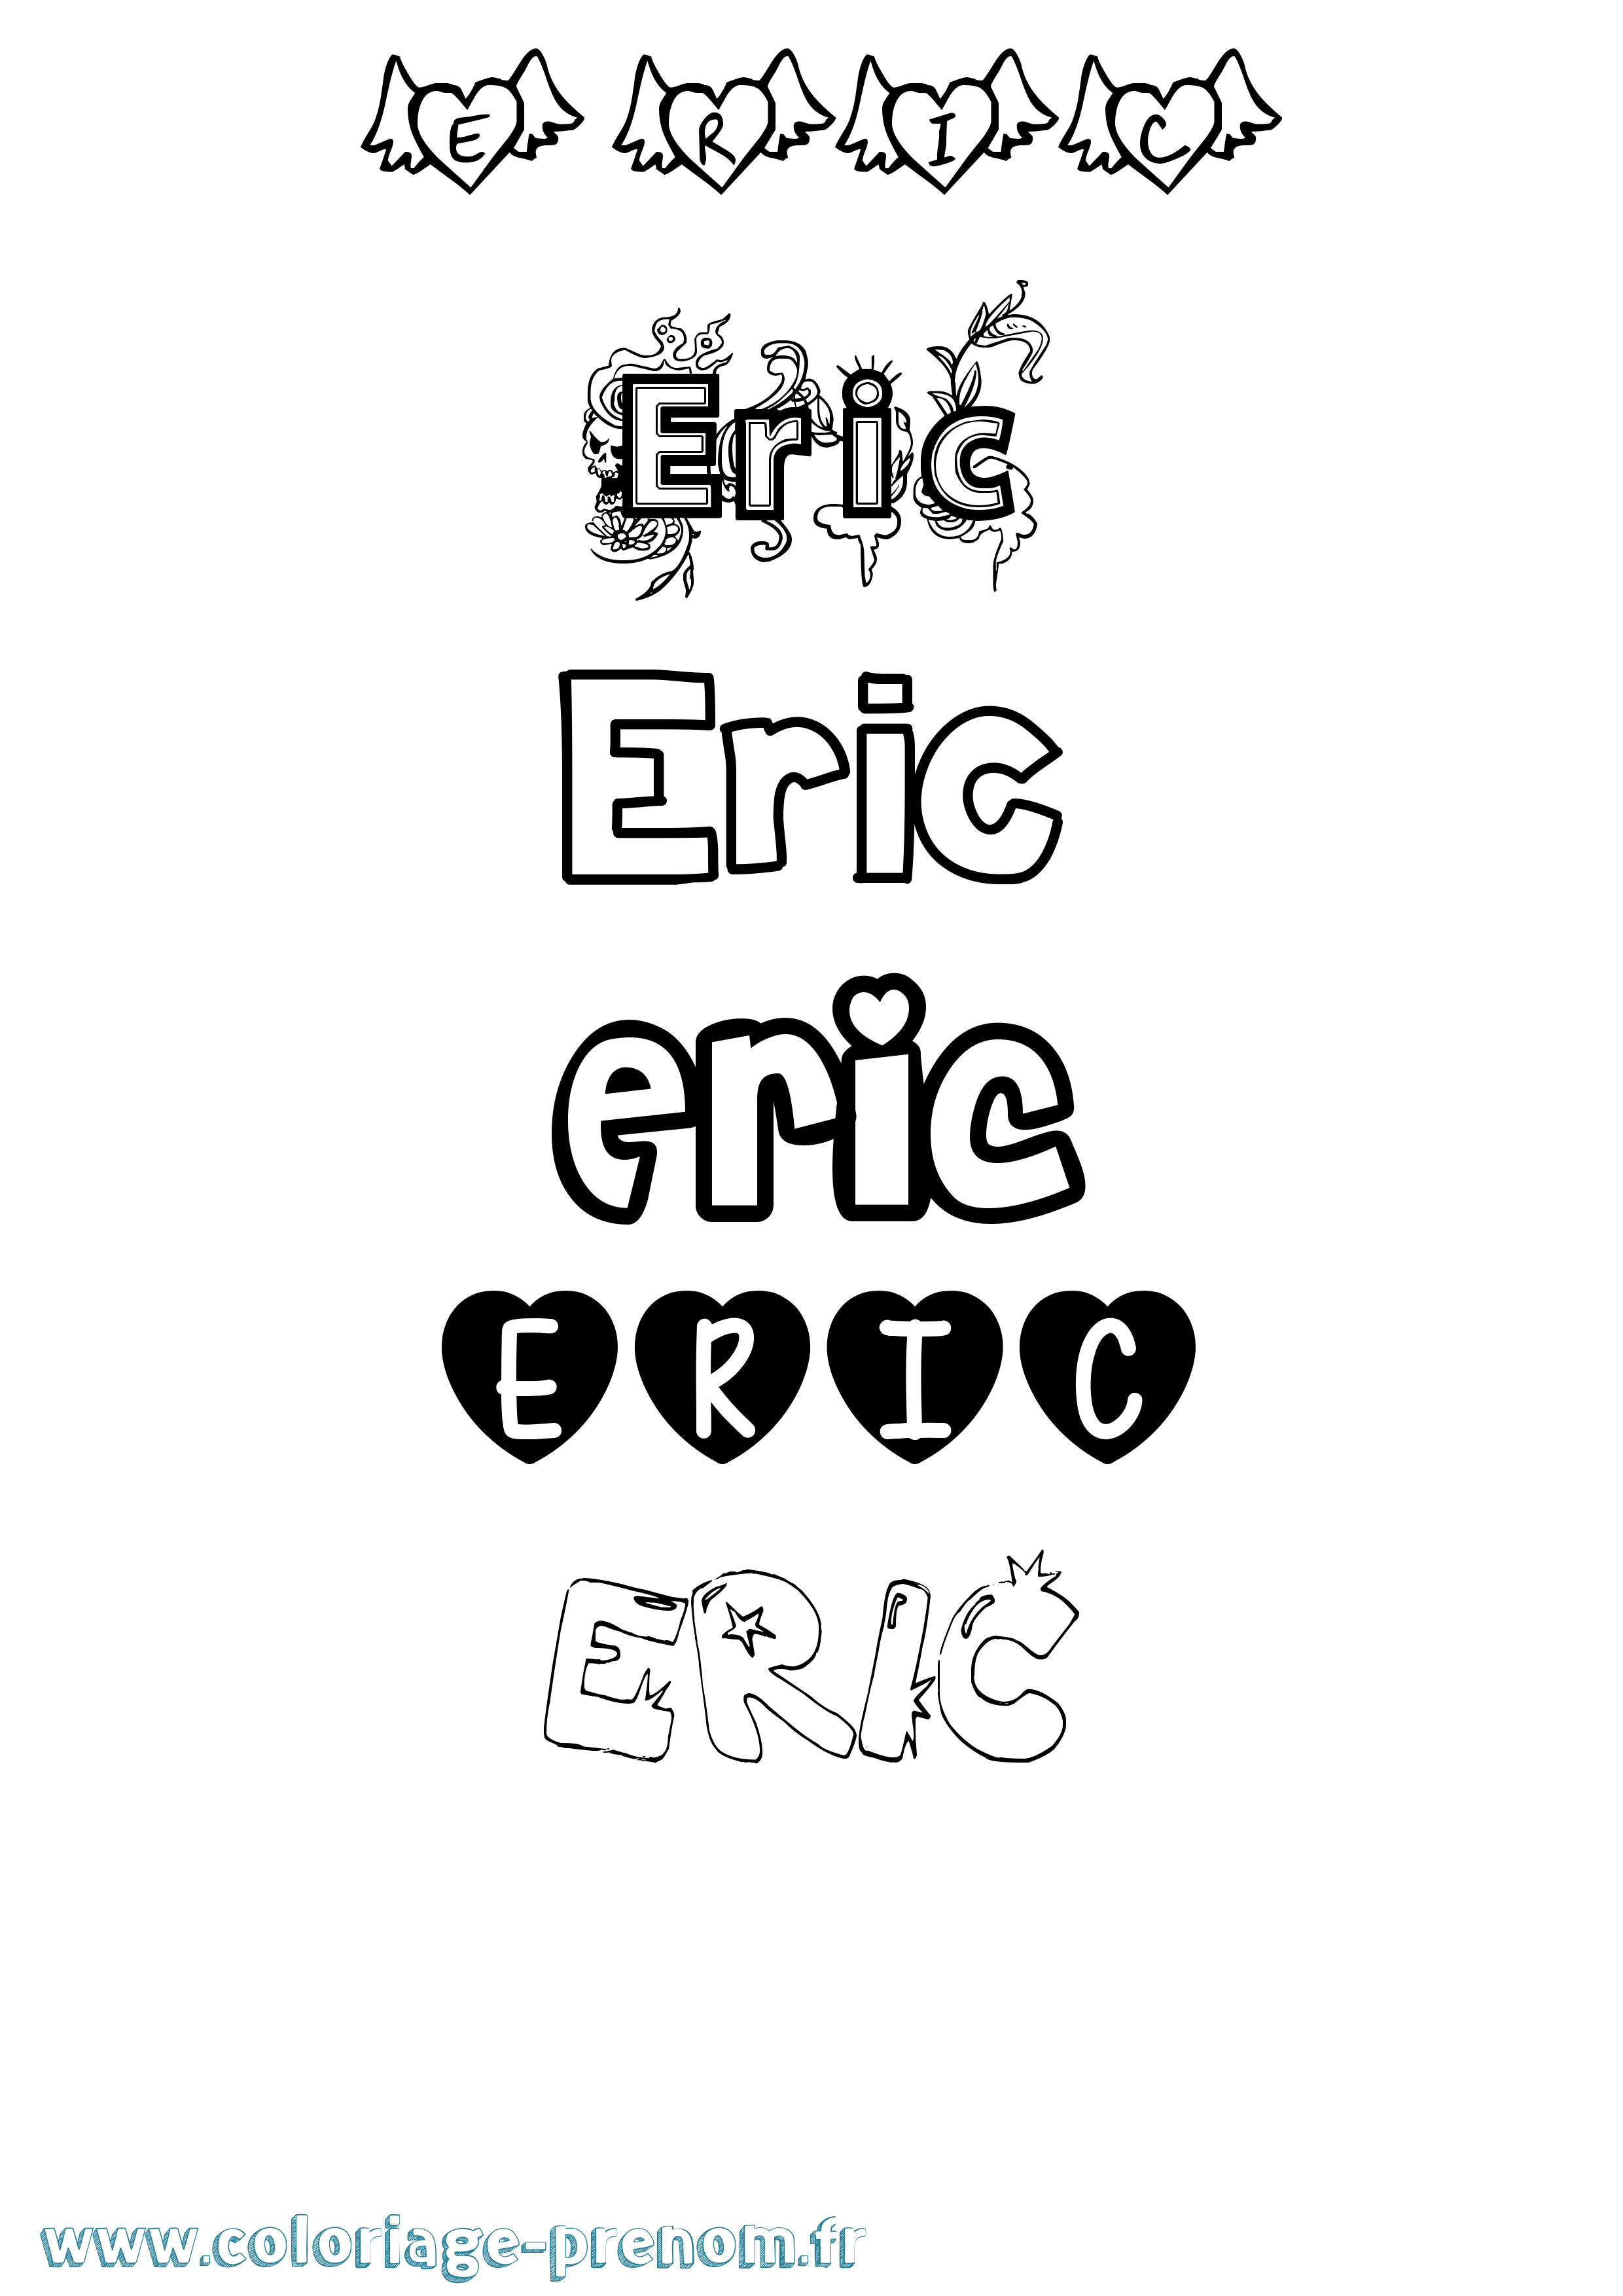 Coloriage prénom Eric